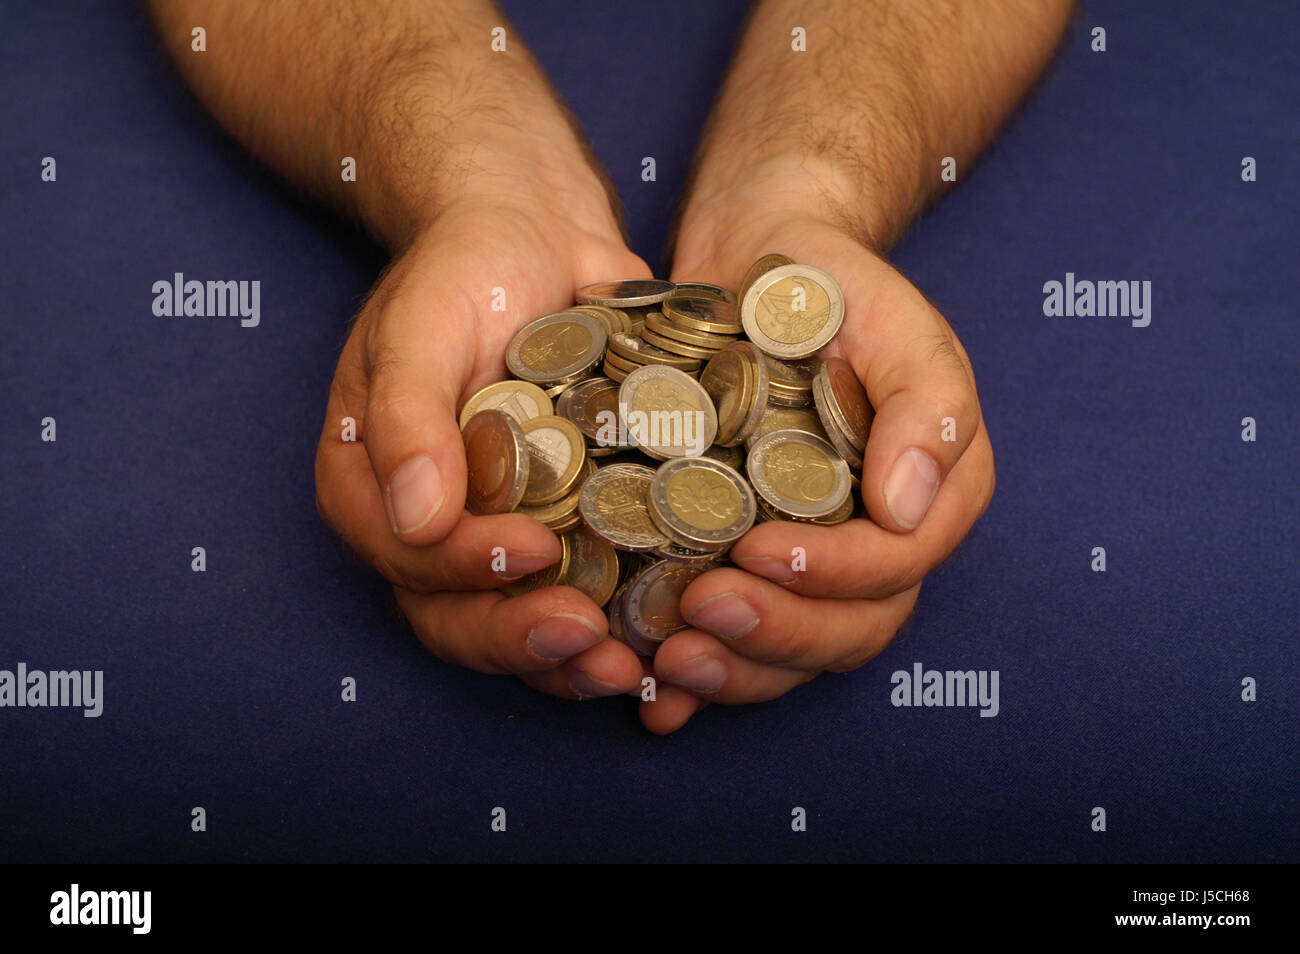 hand full of money Stock Photo